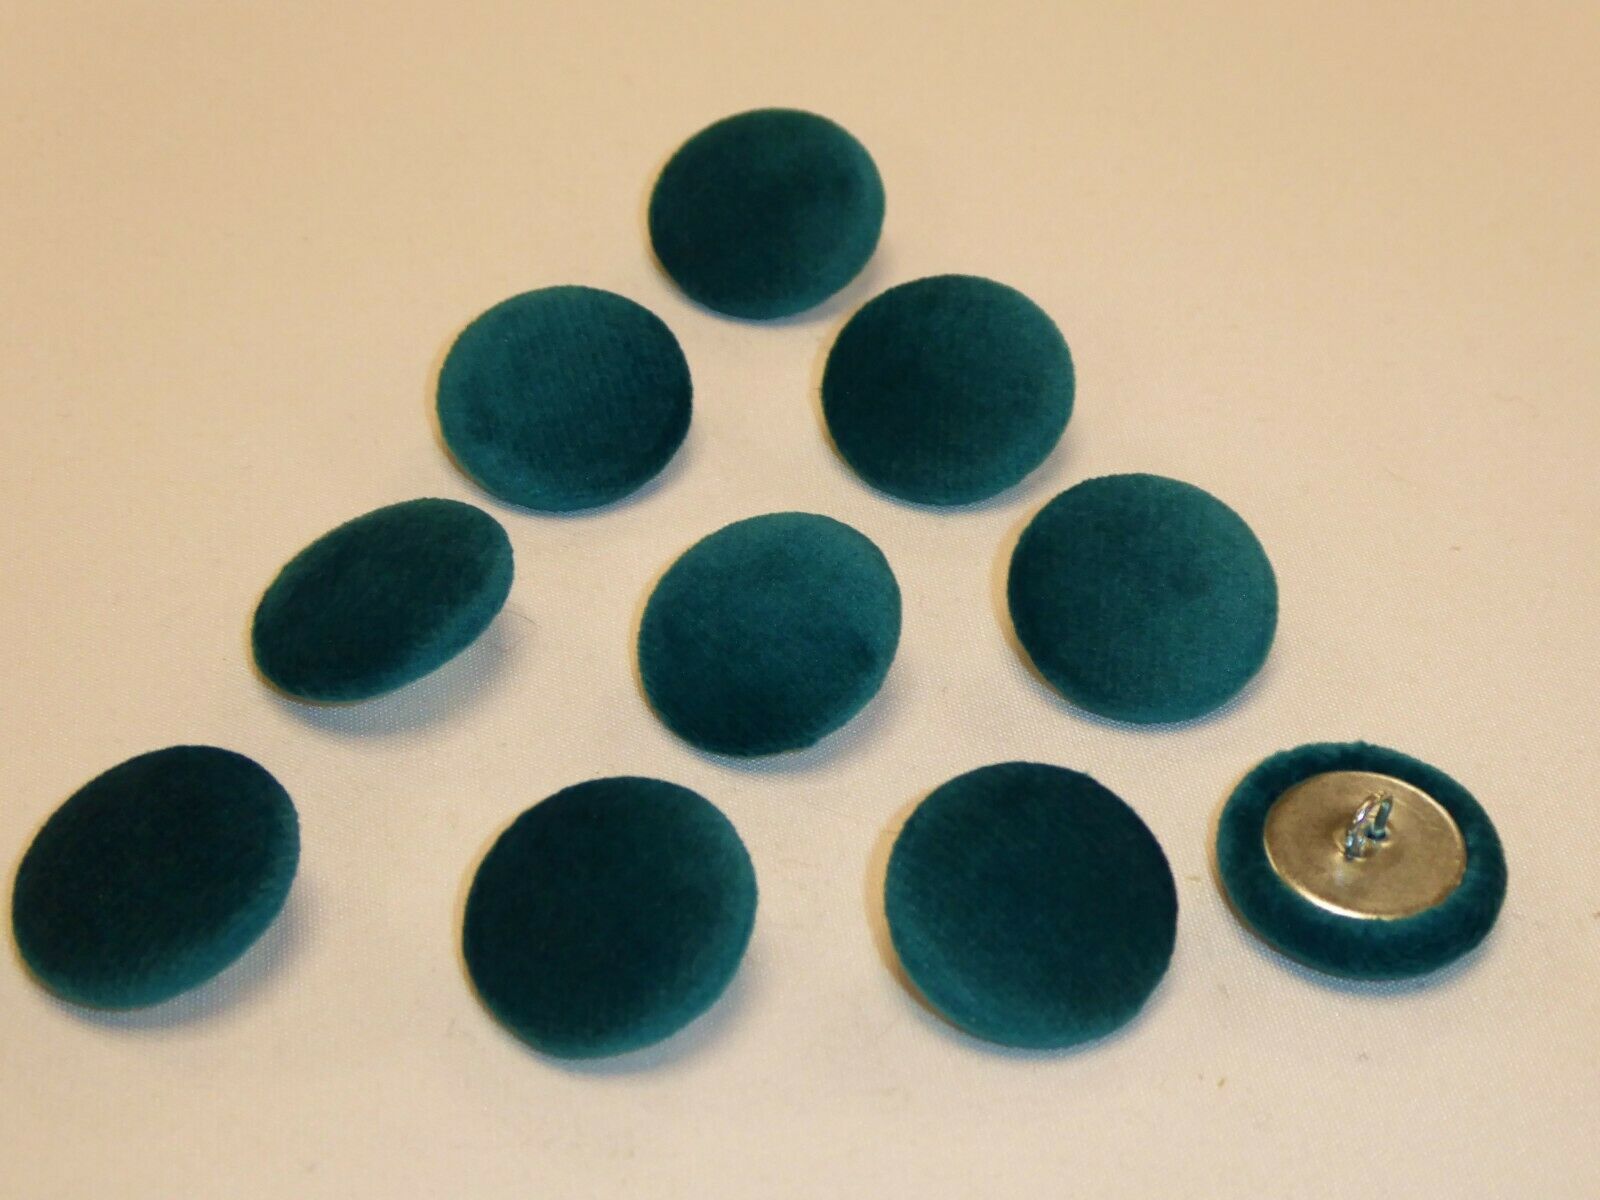 10 x Upholstery Buttons in MALLARD TEAL - Plush Velvet (Size: 25mm